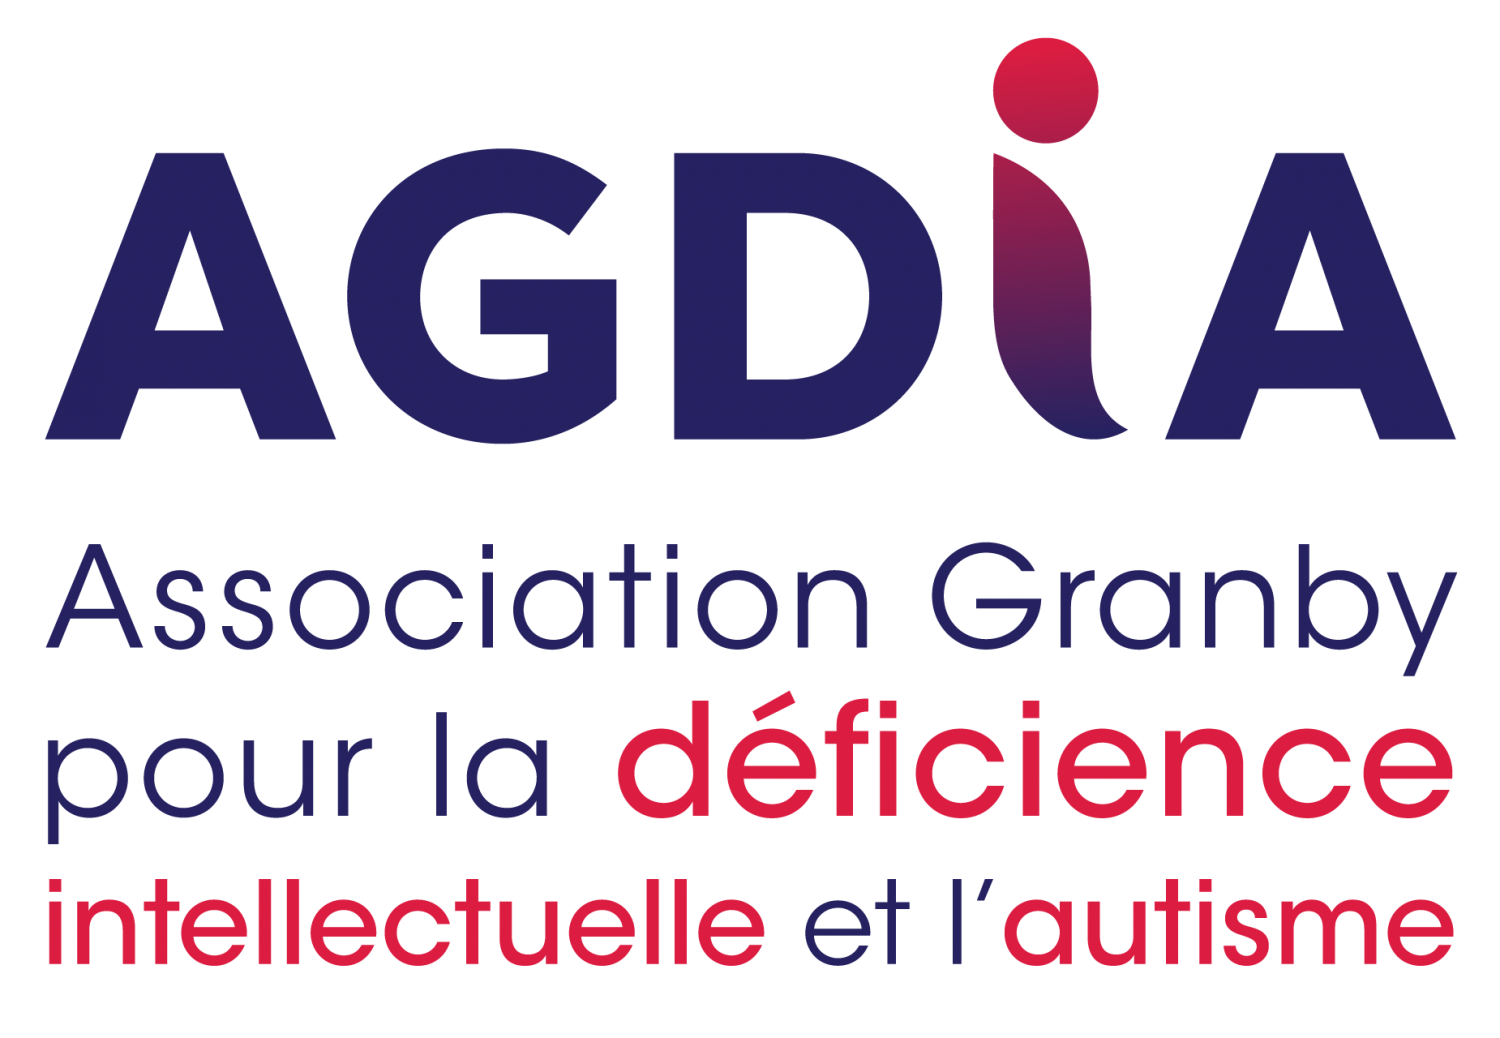 Association Granby pour la déficience intellectuelle et l'autisme (AGDIA)